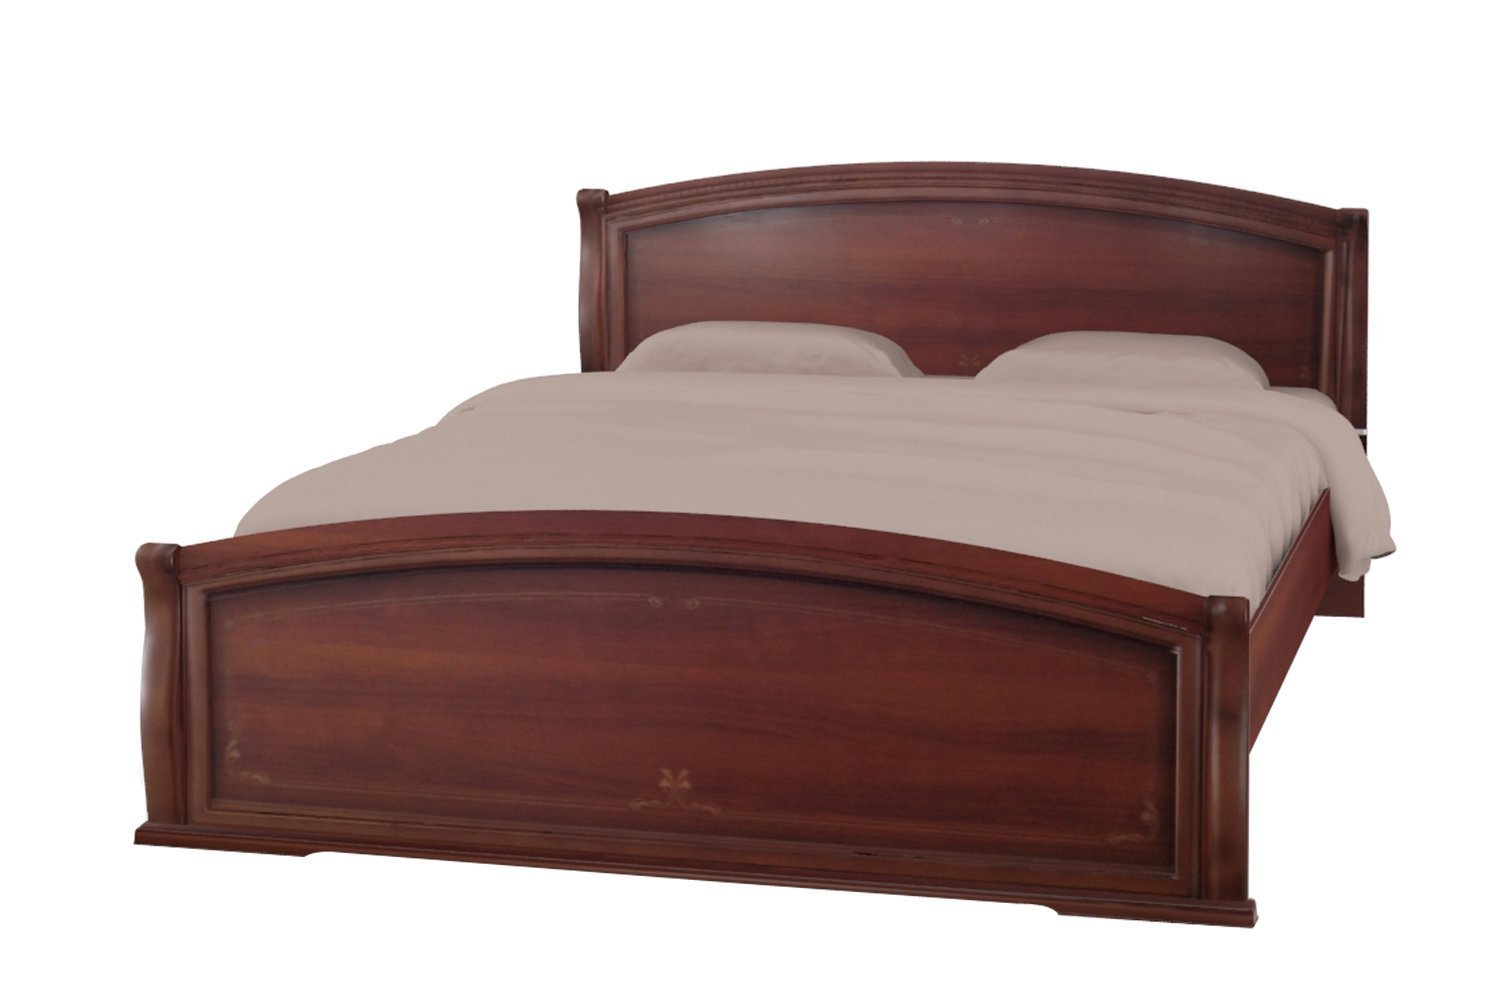 Кровать Валенсия 1600